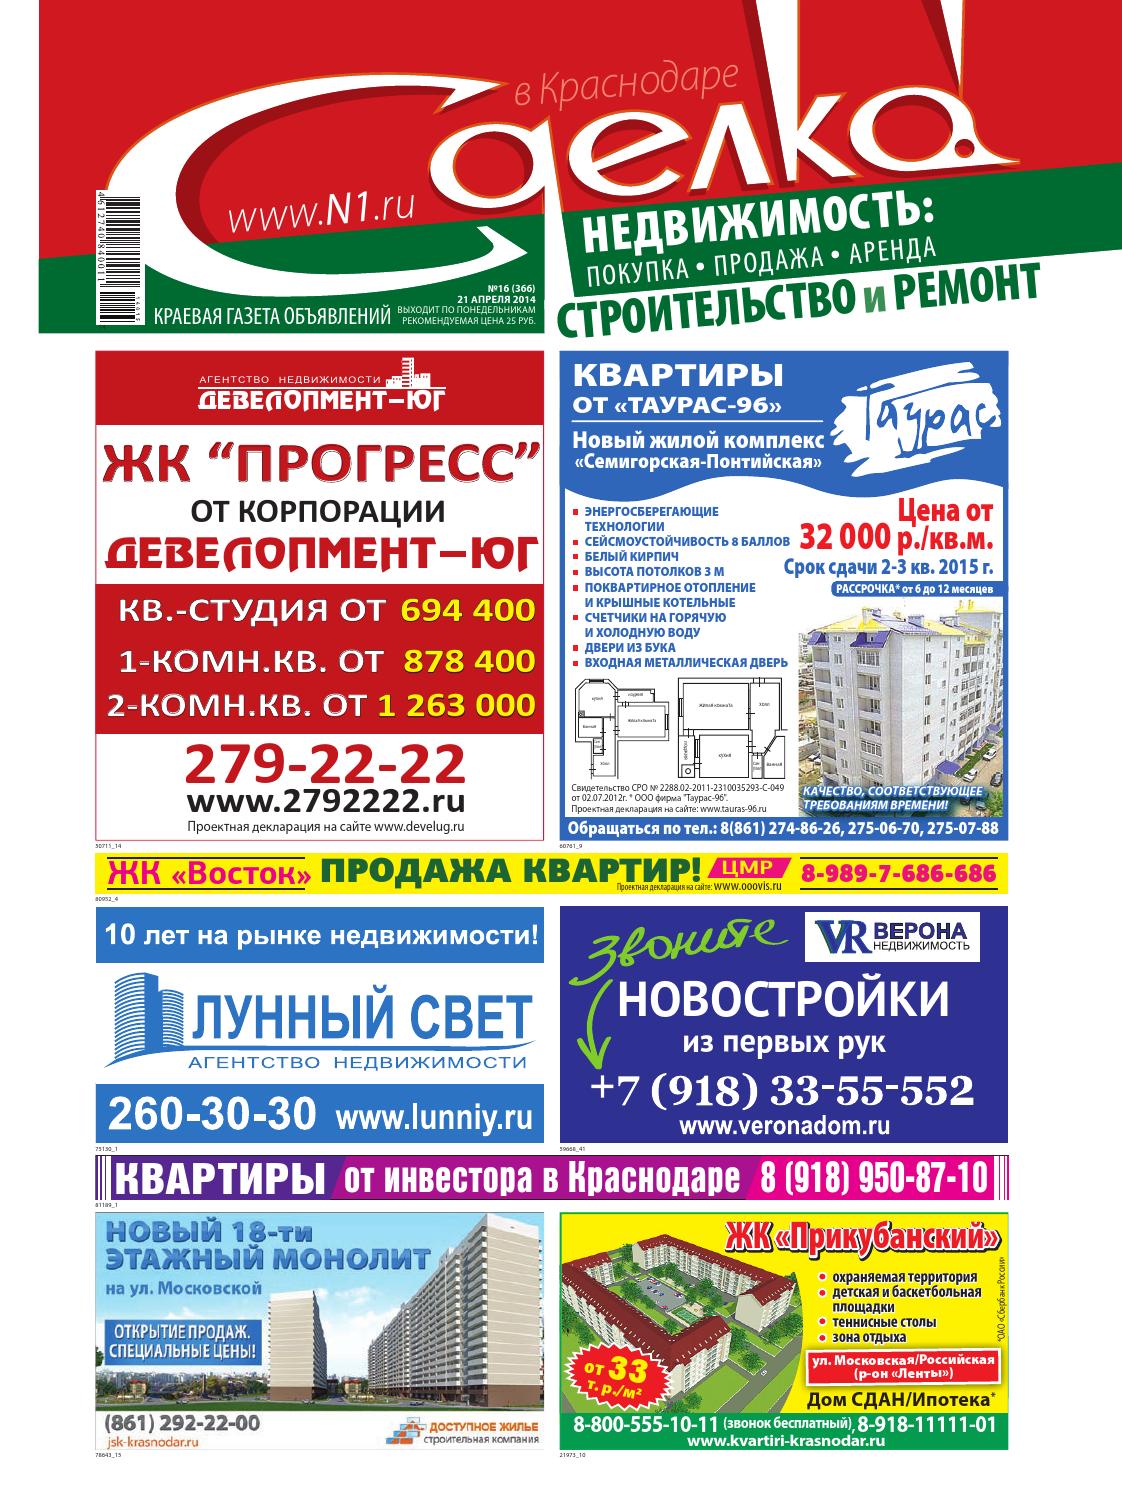 Сделка в Краснодаре №366, апреля 2014